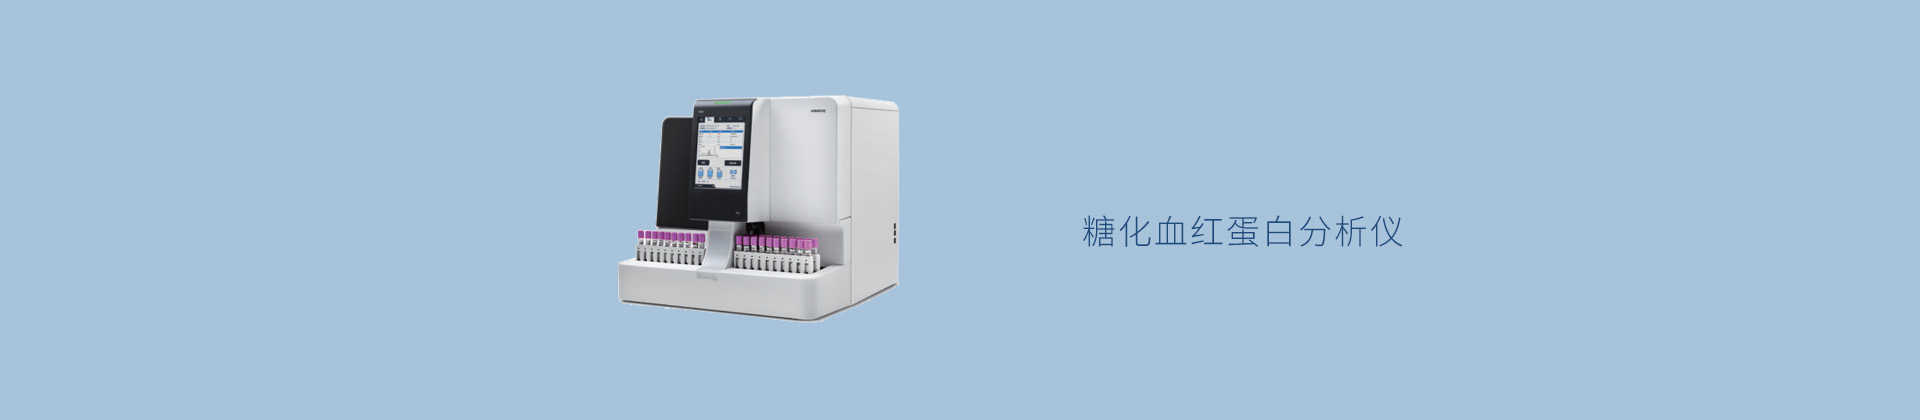 H50 糖化血红蛋白分析仪